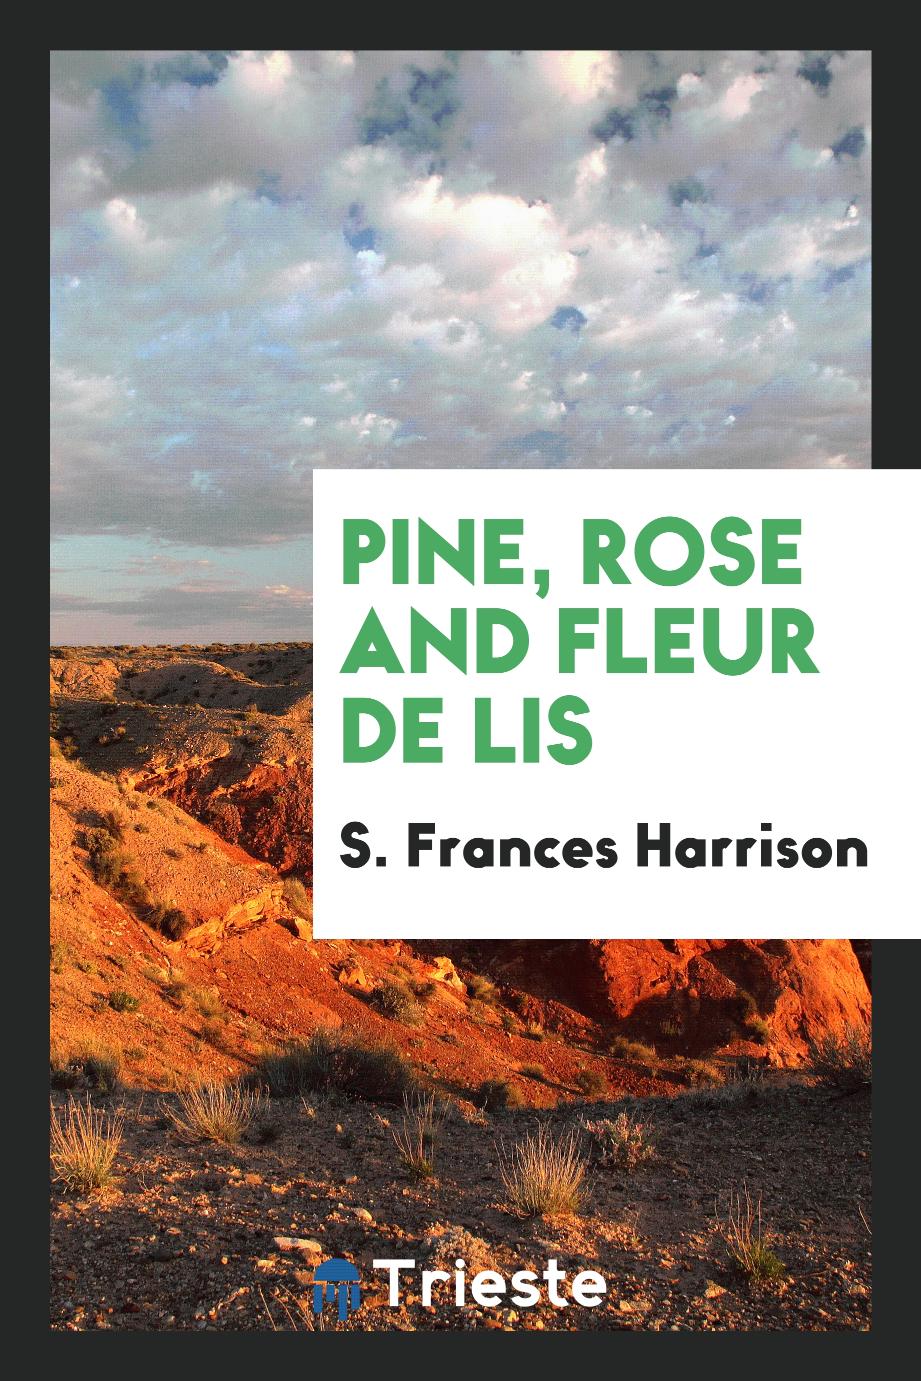 Pine, rose and fleur de lis